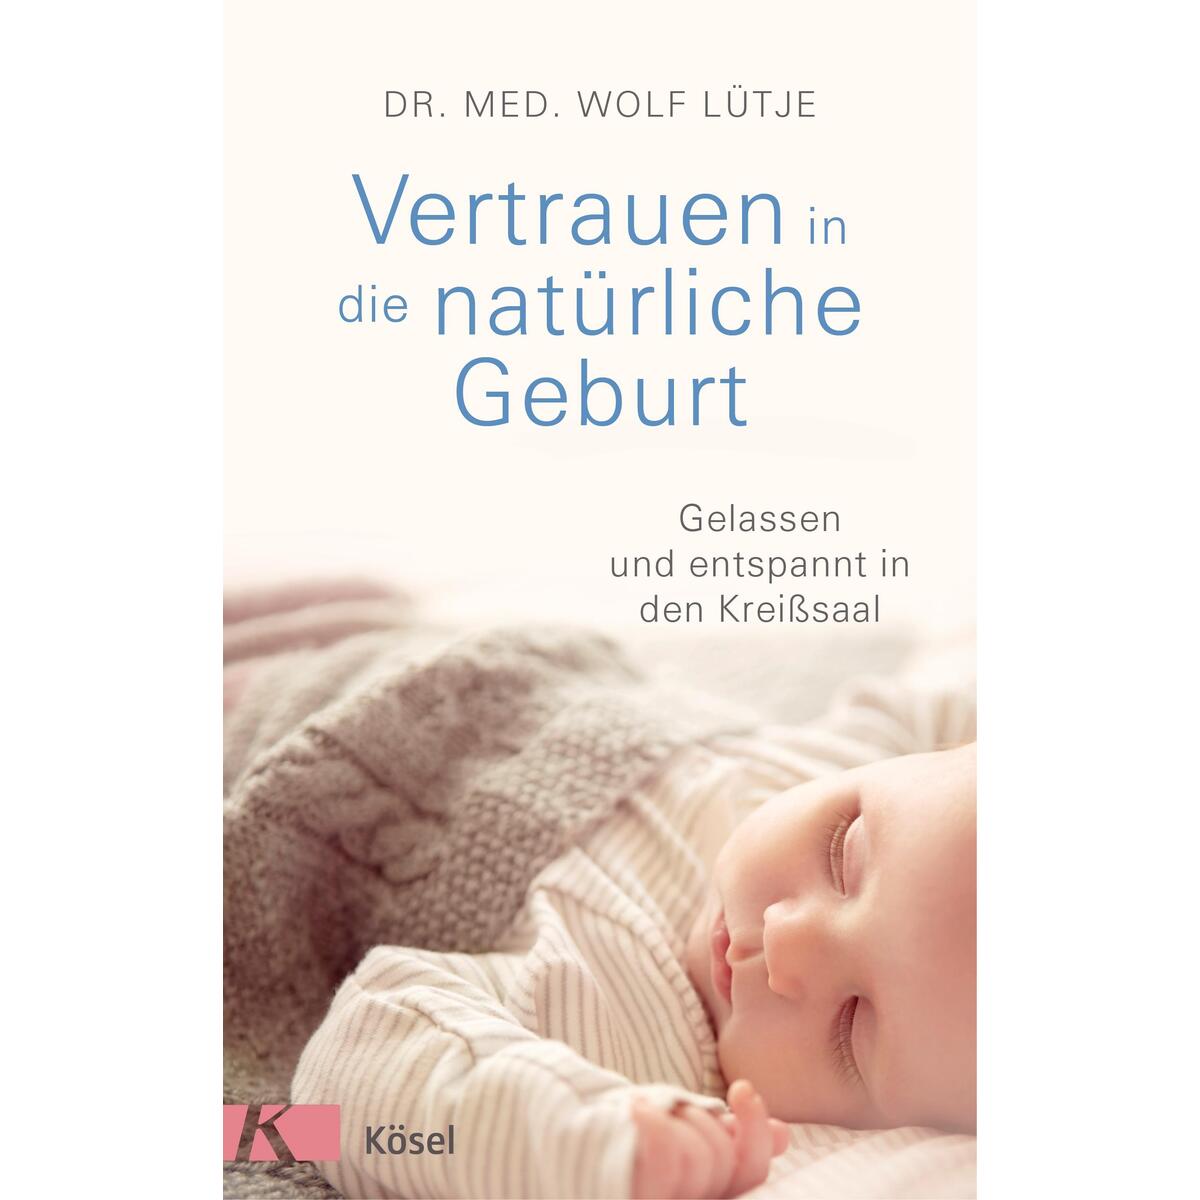 Vertrauen in die natürliche Geburt von Kösel-Verlag